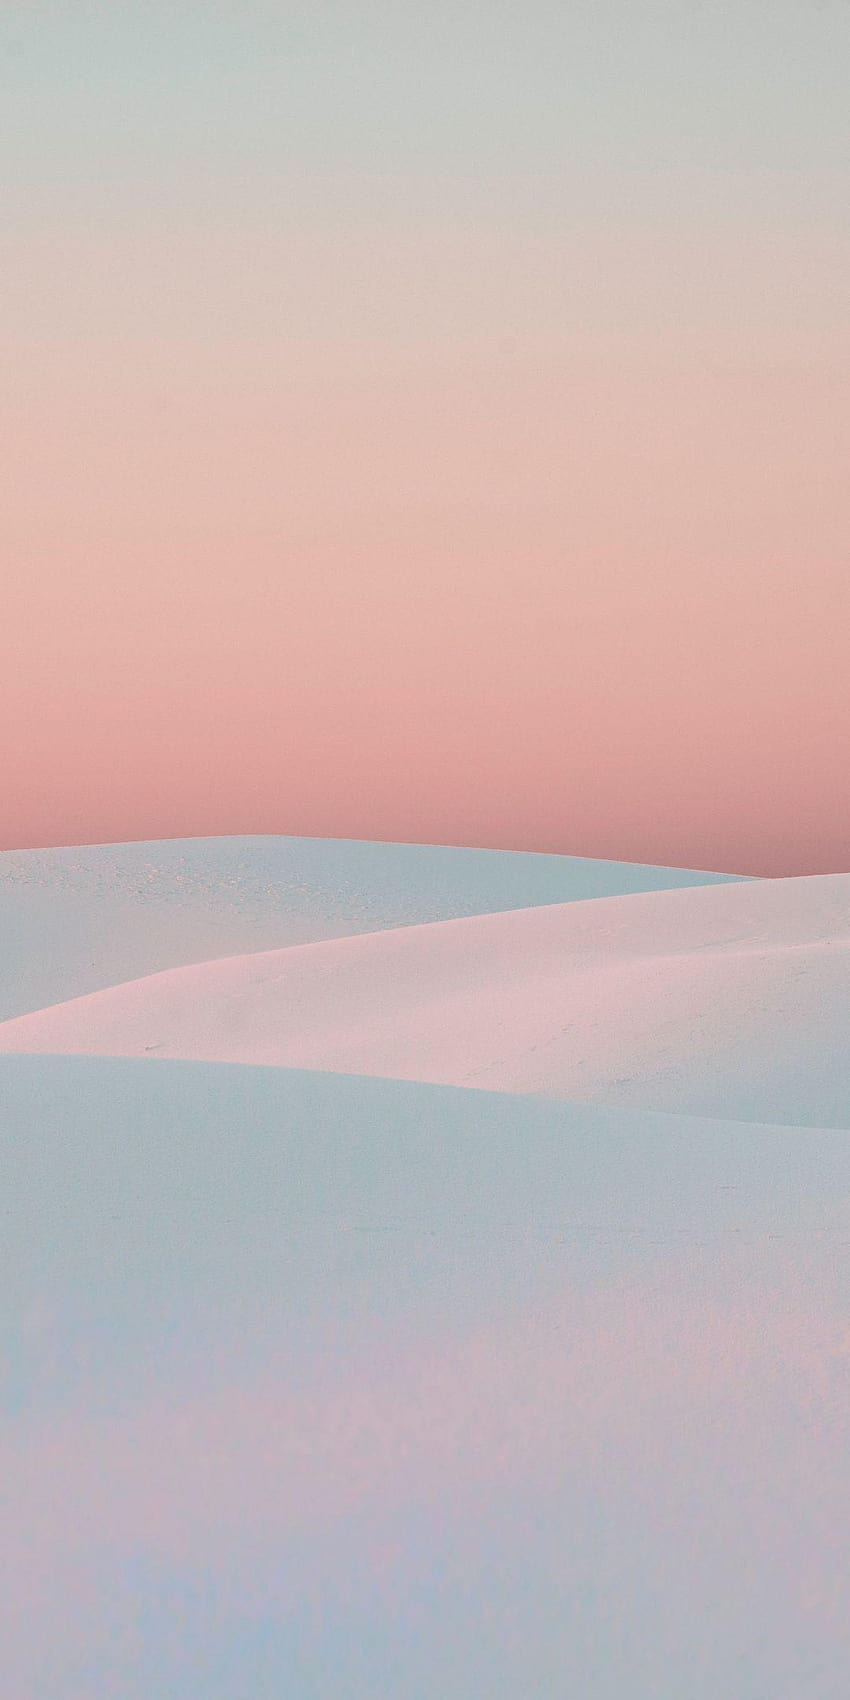 Matahari terbenam, gurun putih, bukit pasir, alam, bukit pasir putih wallpaper ponsel HD